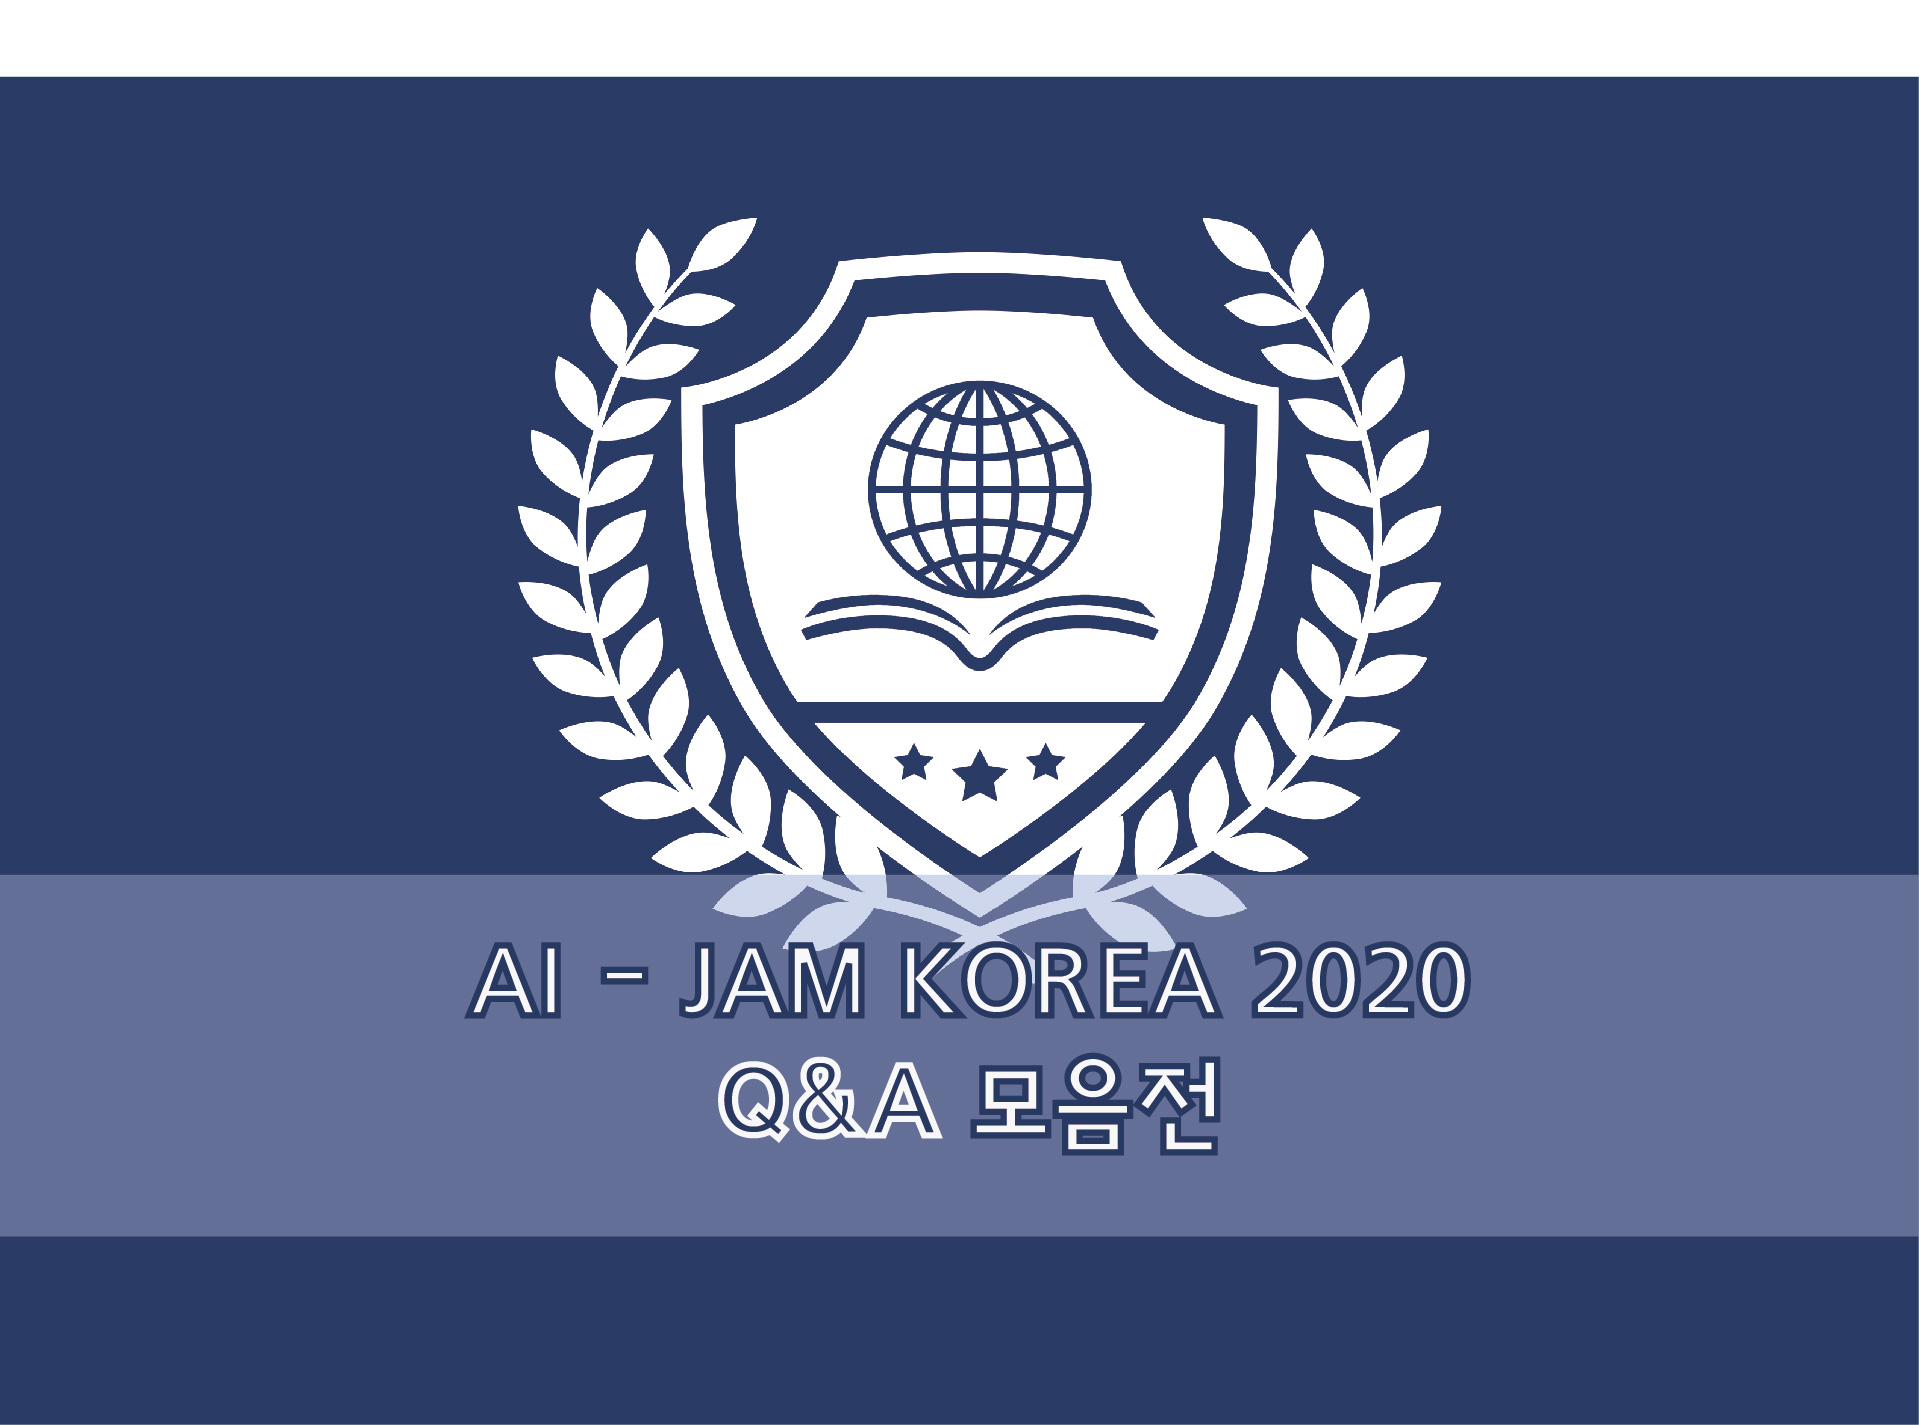 AI-JAM Korea